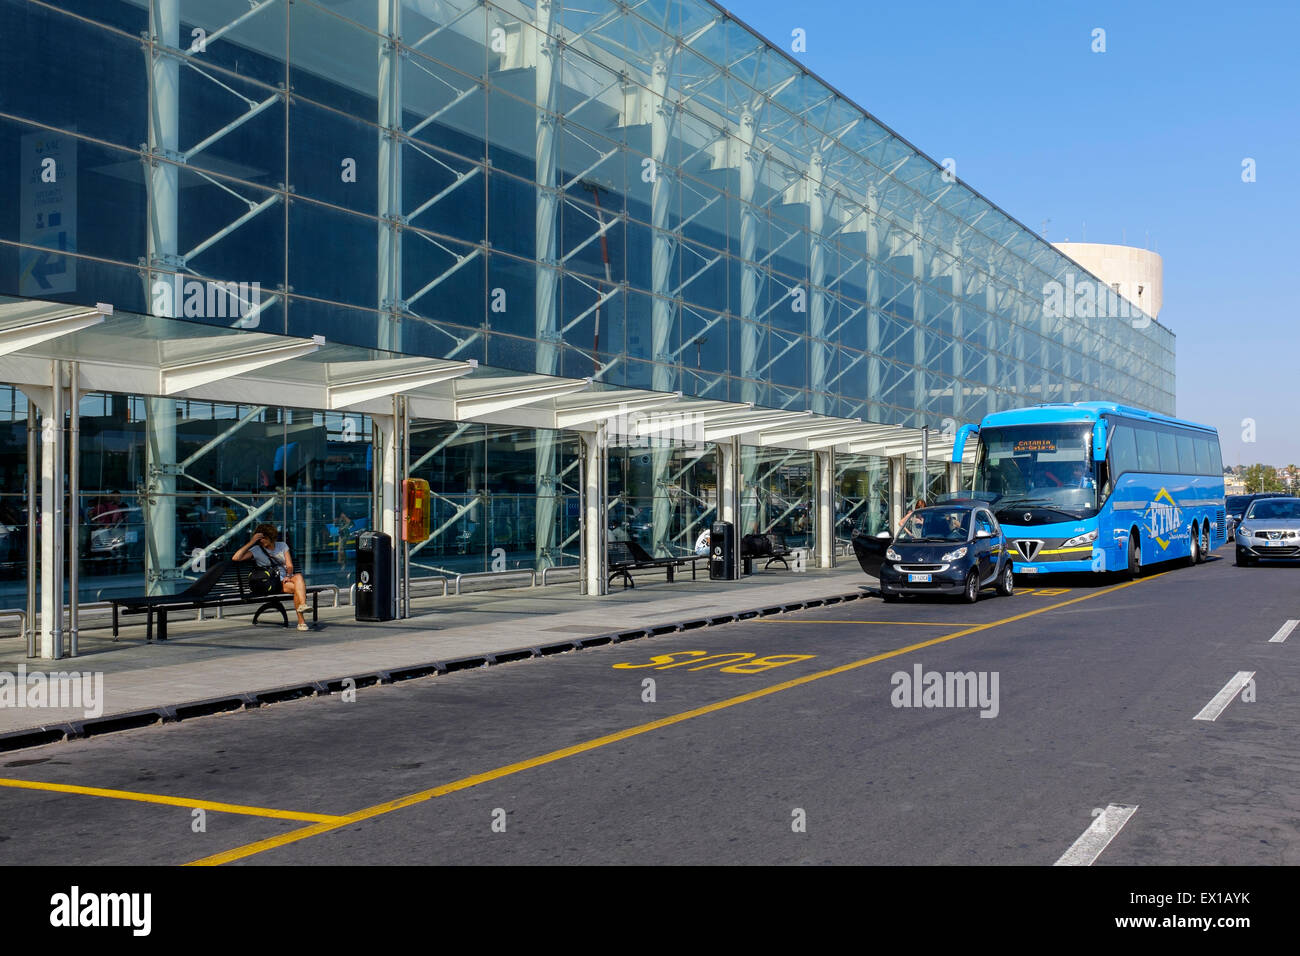 Catania airport immagini e fotografie stock ad alta risoluzione - Alamy